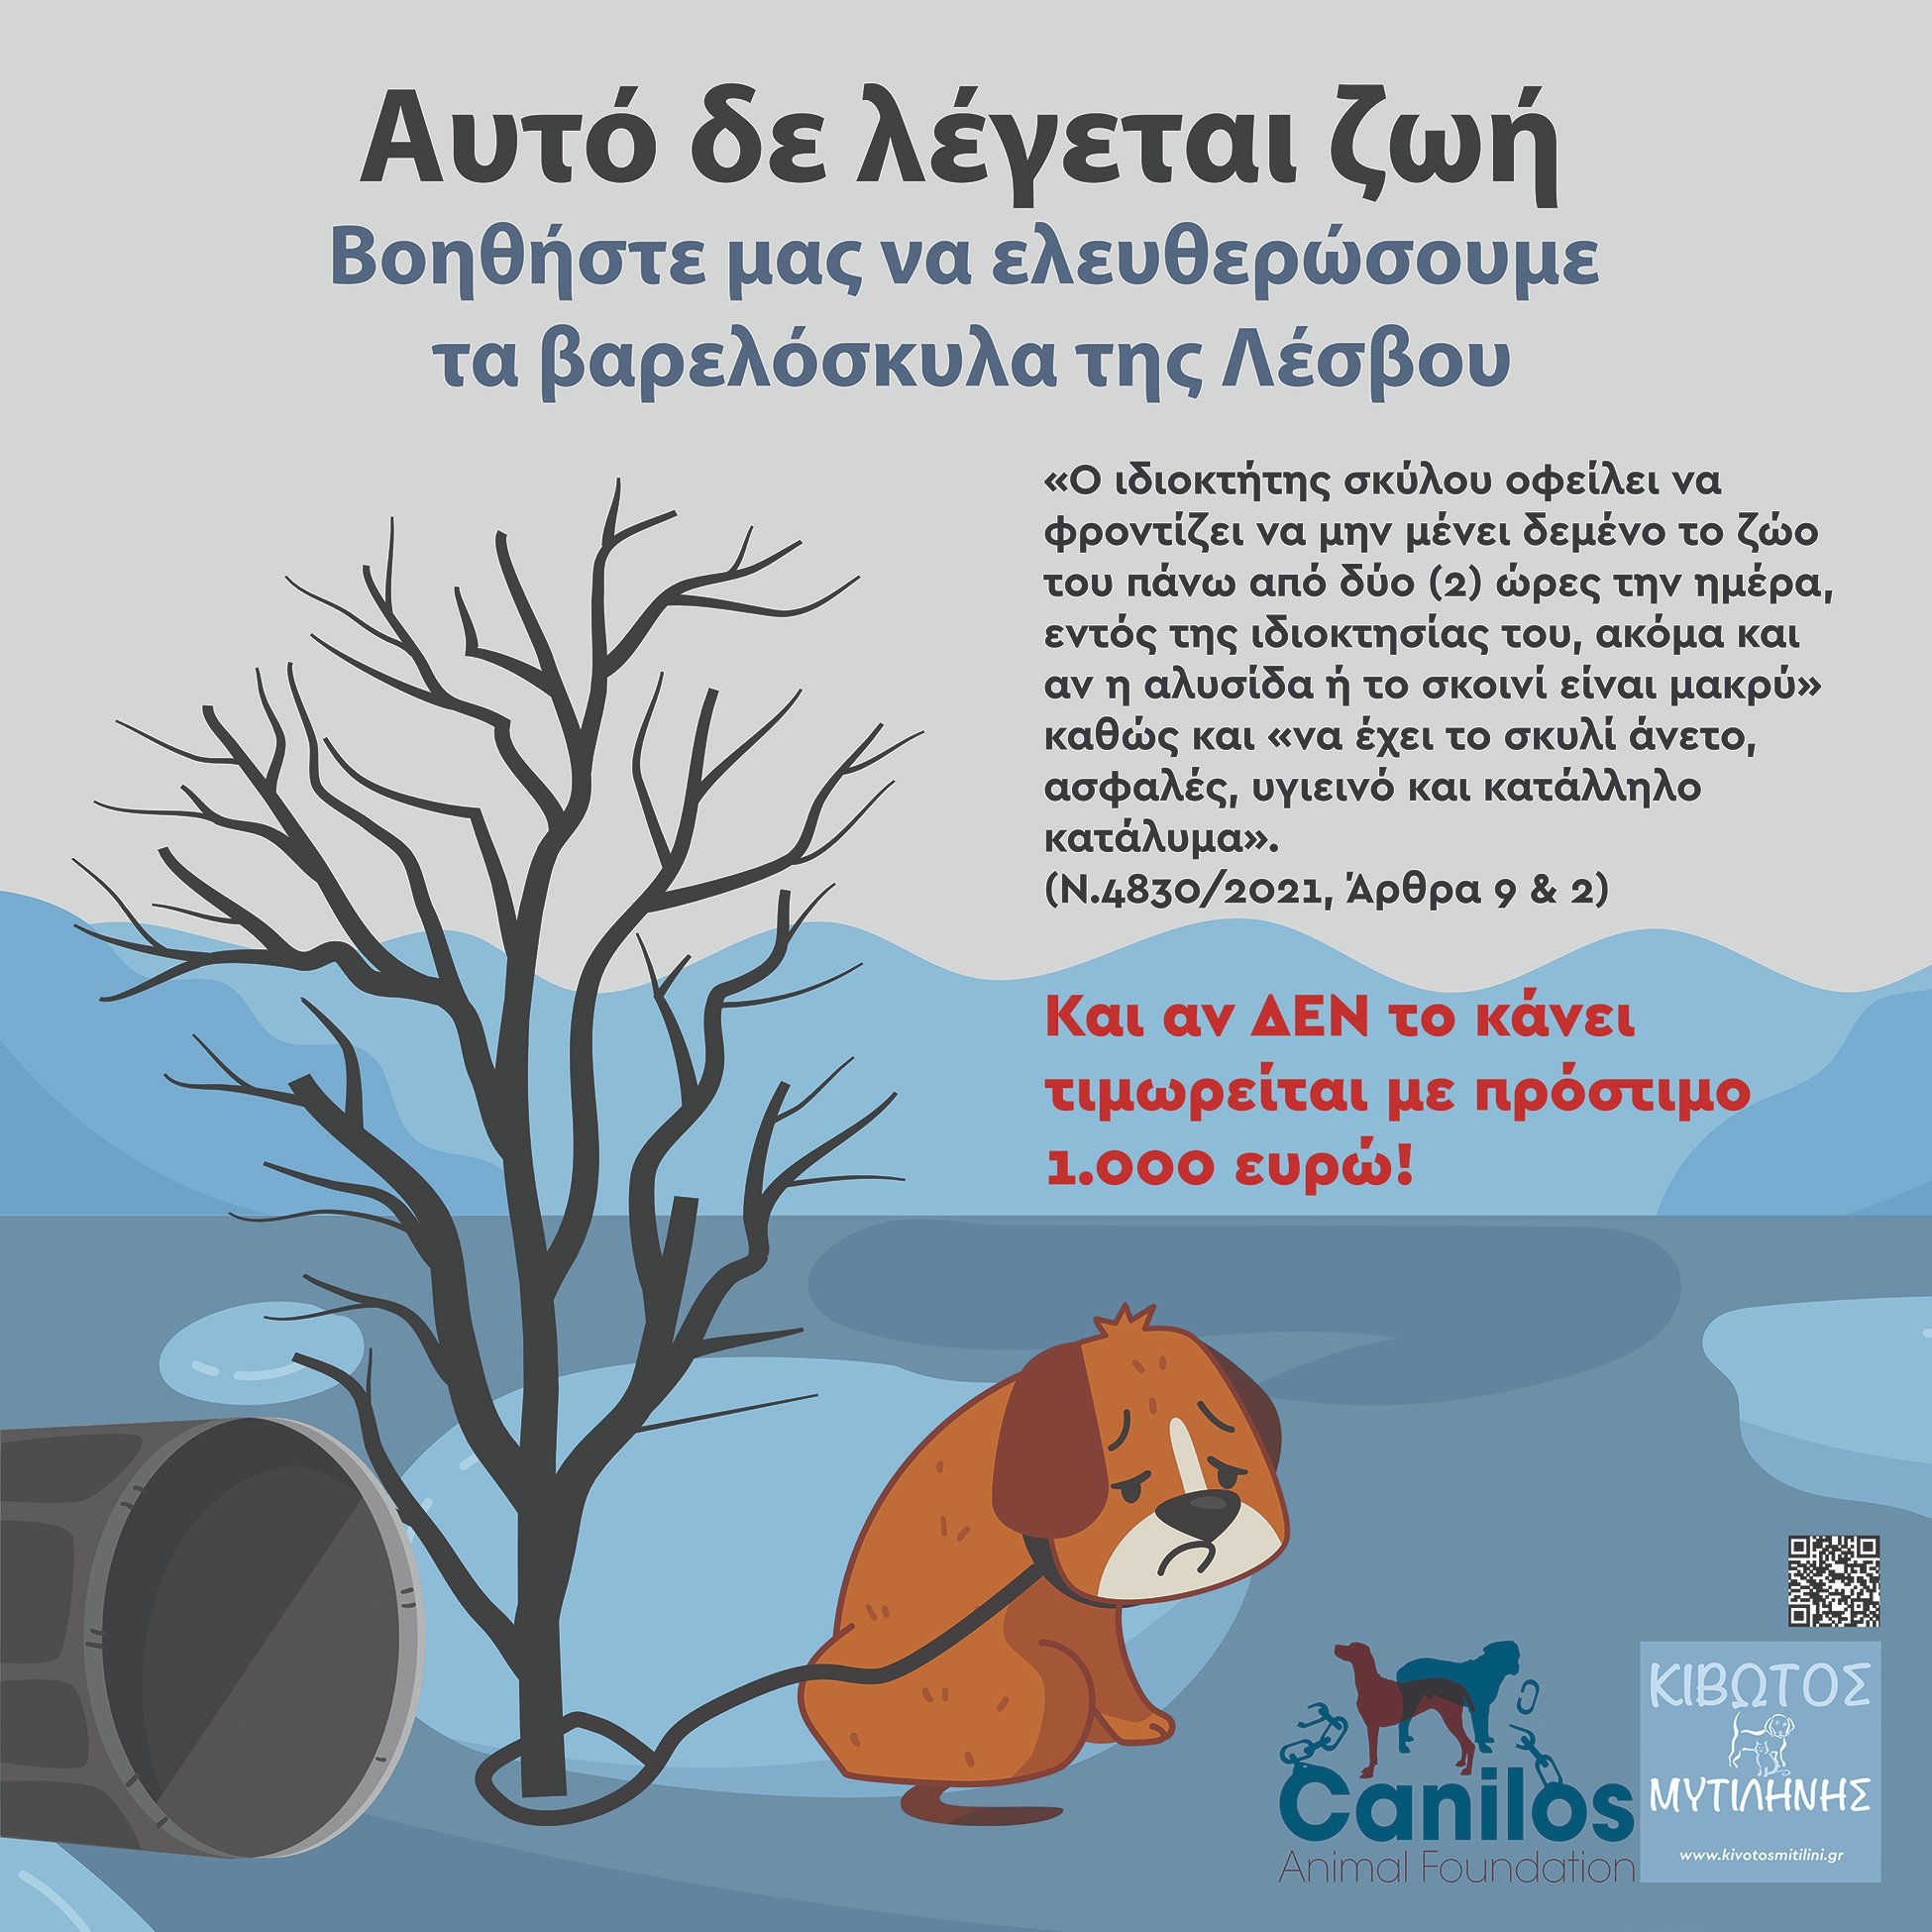 Μήνυμα ευαισθητοποίησης για την προστασία των ζώων σε αστικά λεωφορεία της Λέσβου